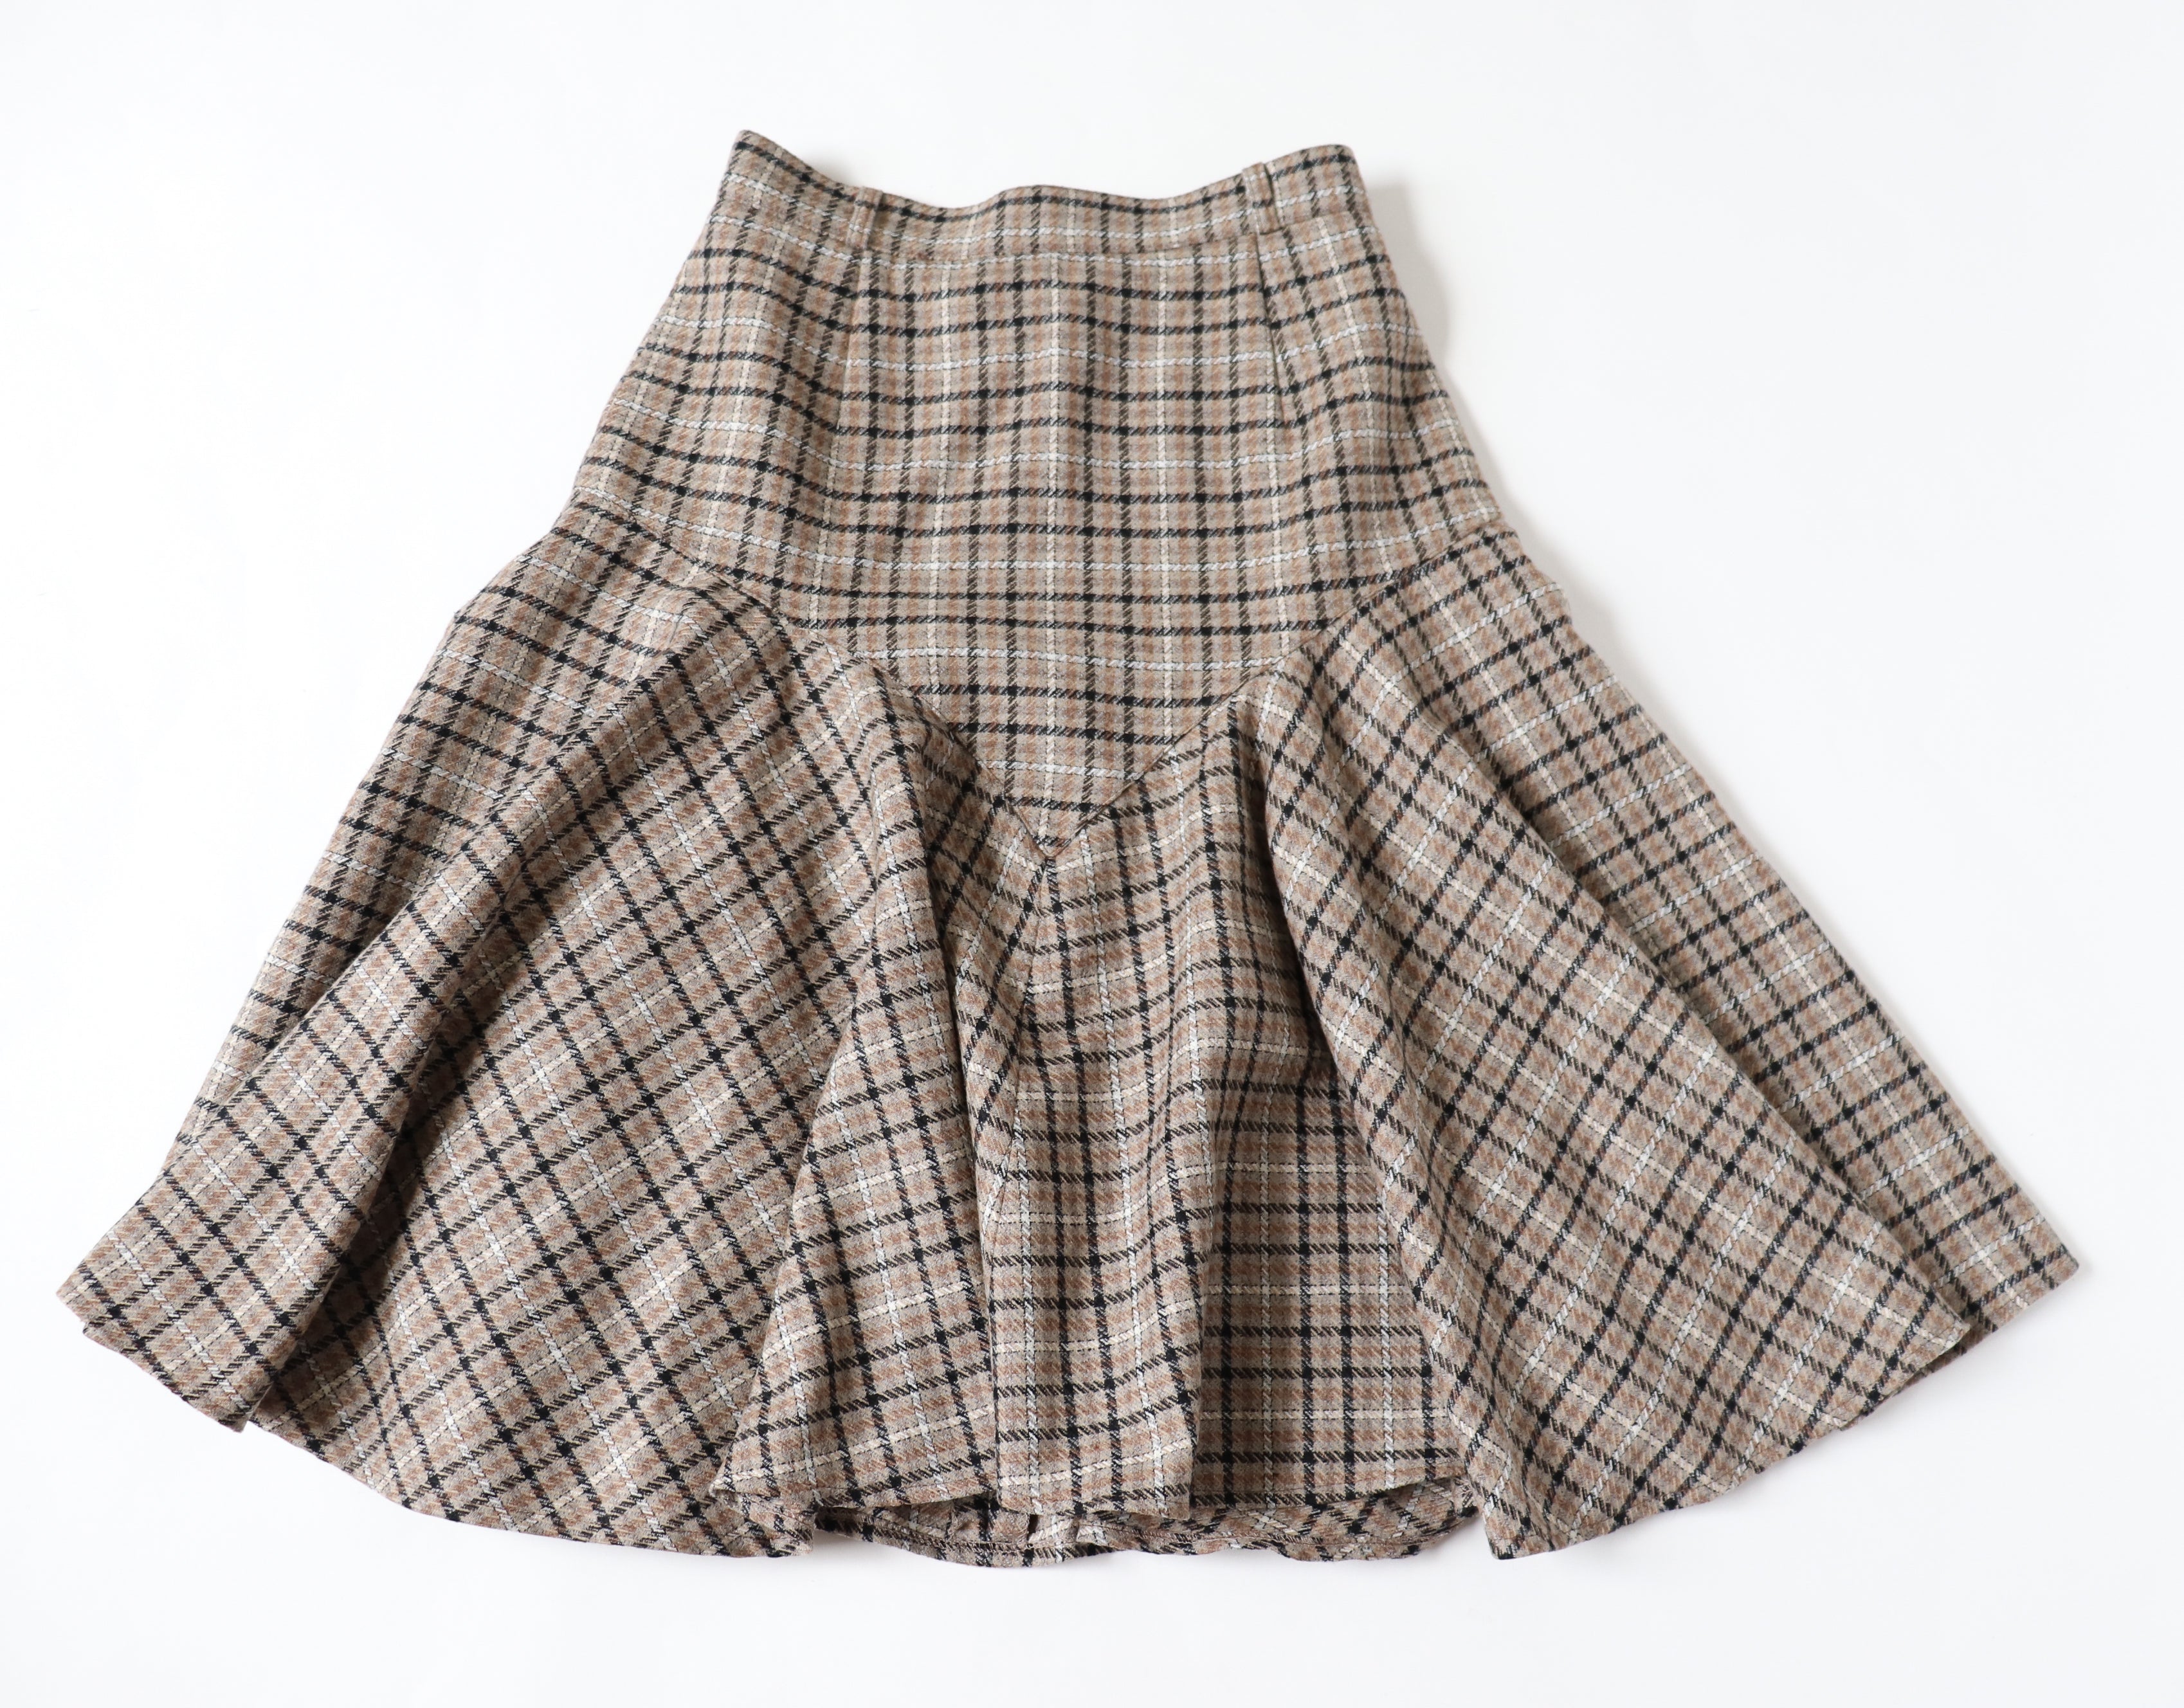 Drop Waist Vintage Skirt - Beige / Brown - Plaid / Tweed  - Wool Blend - S / UK 10